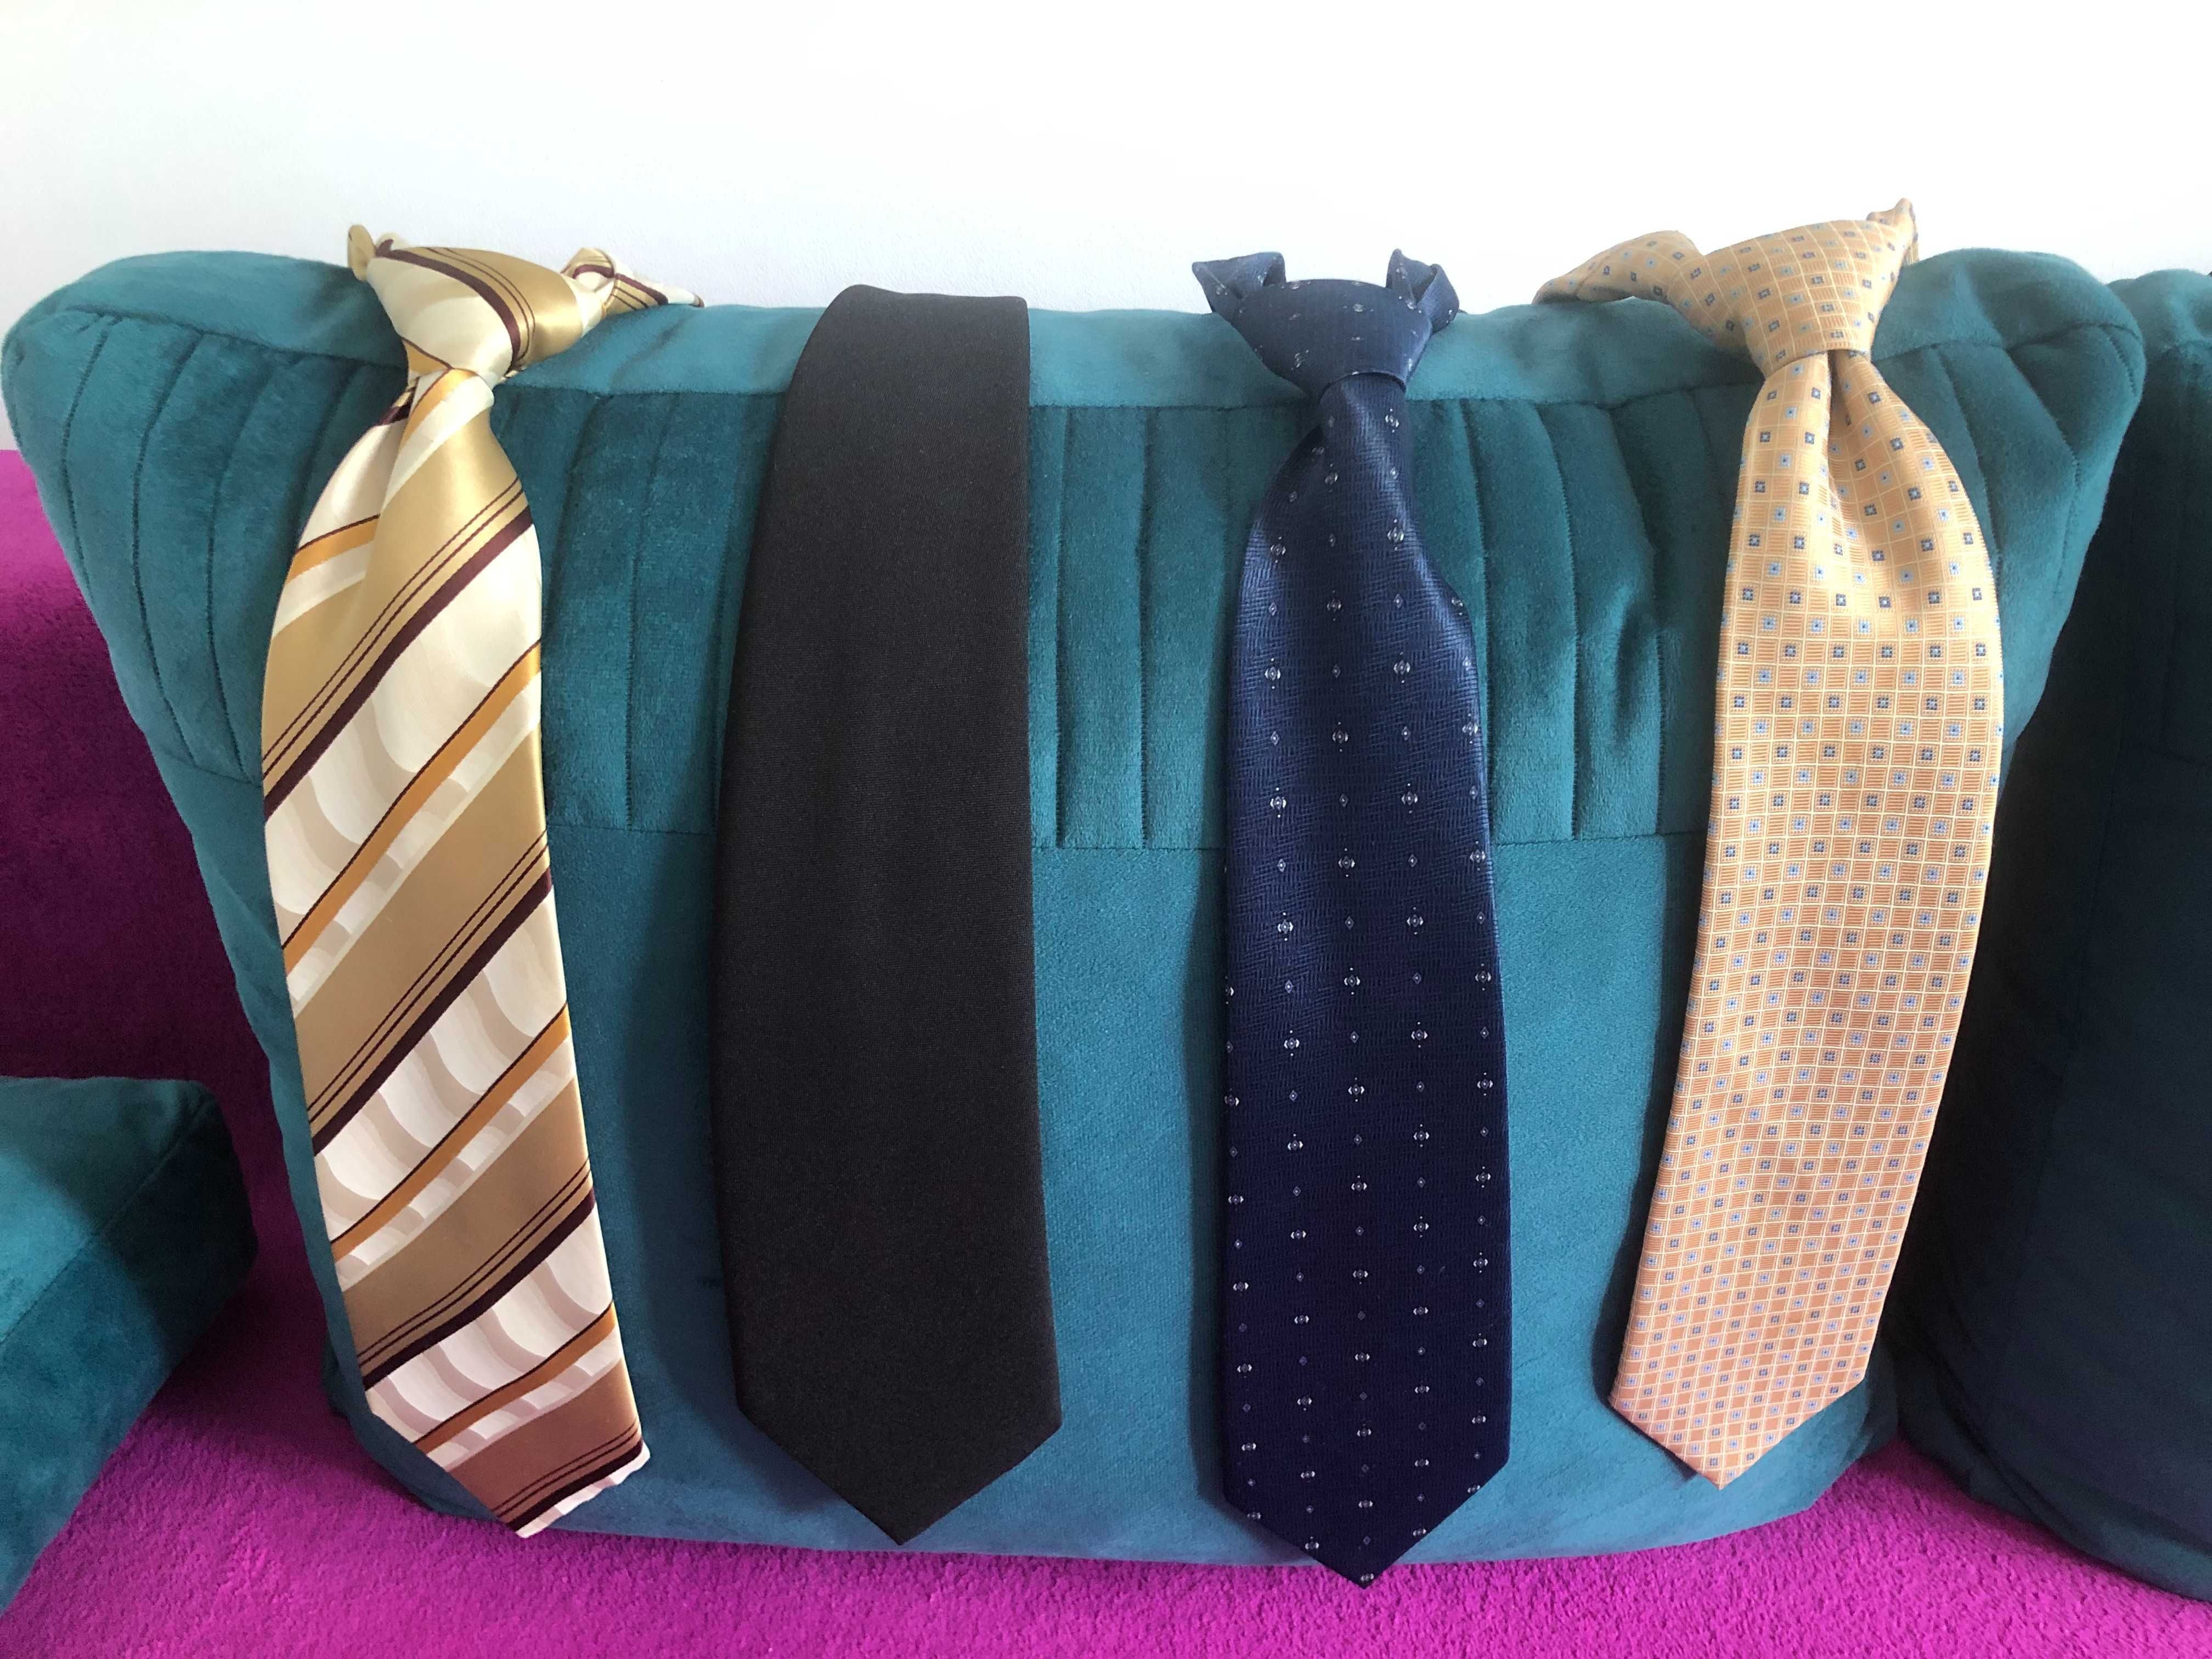 Krawaty męskie, jak nowe, różne wzory i kolory (10 szt.) - okazja!